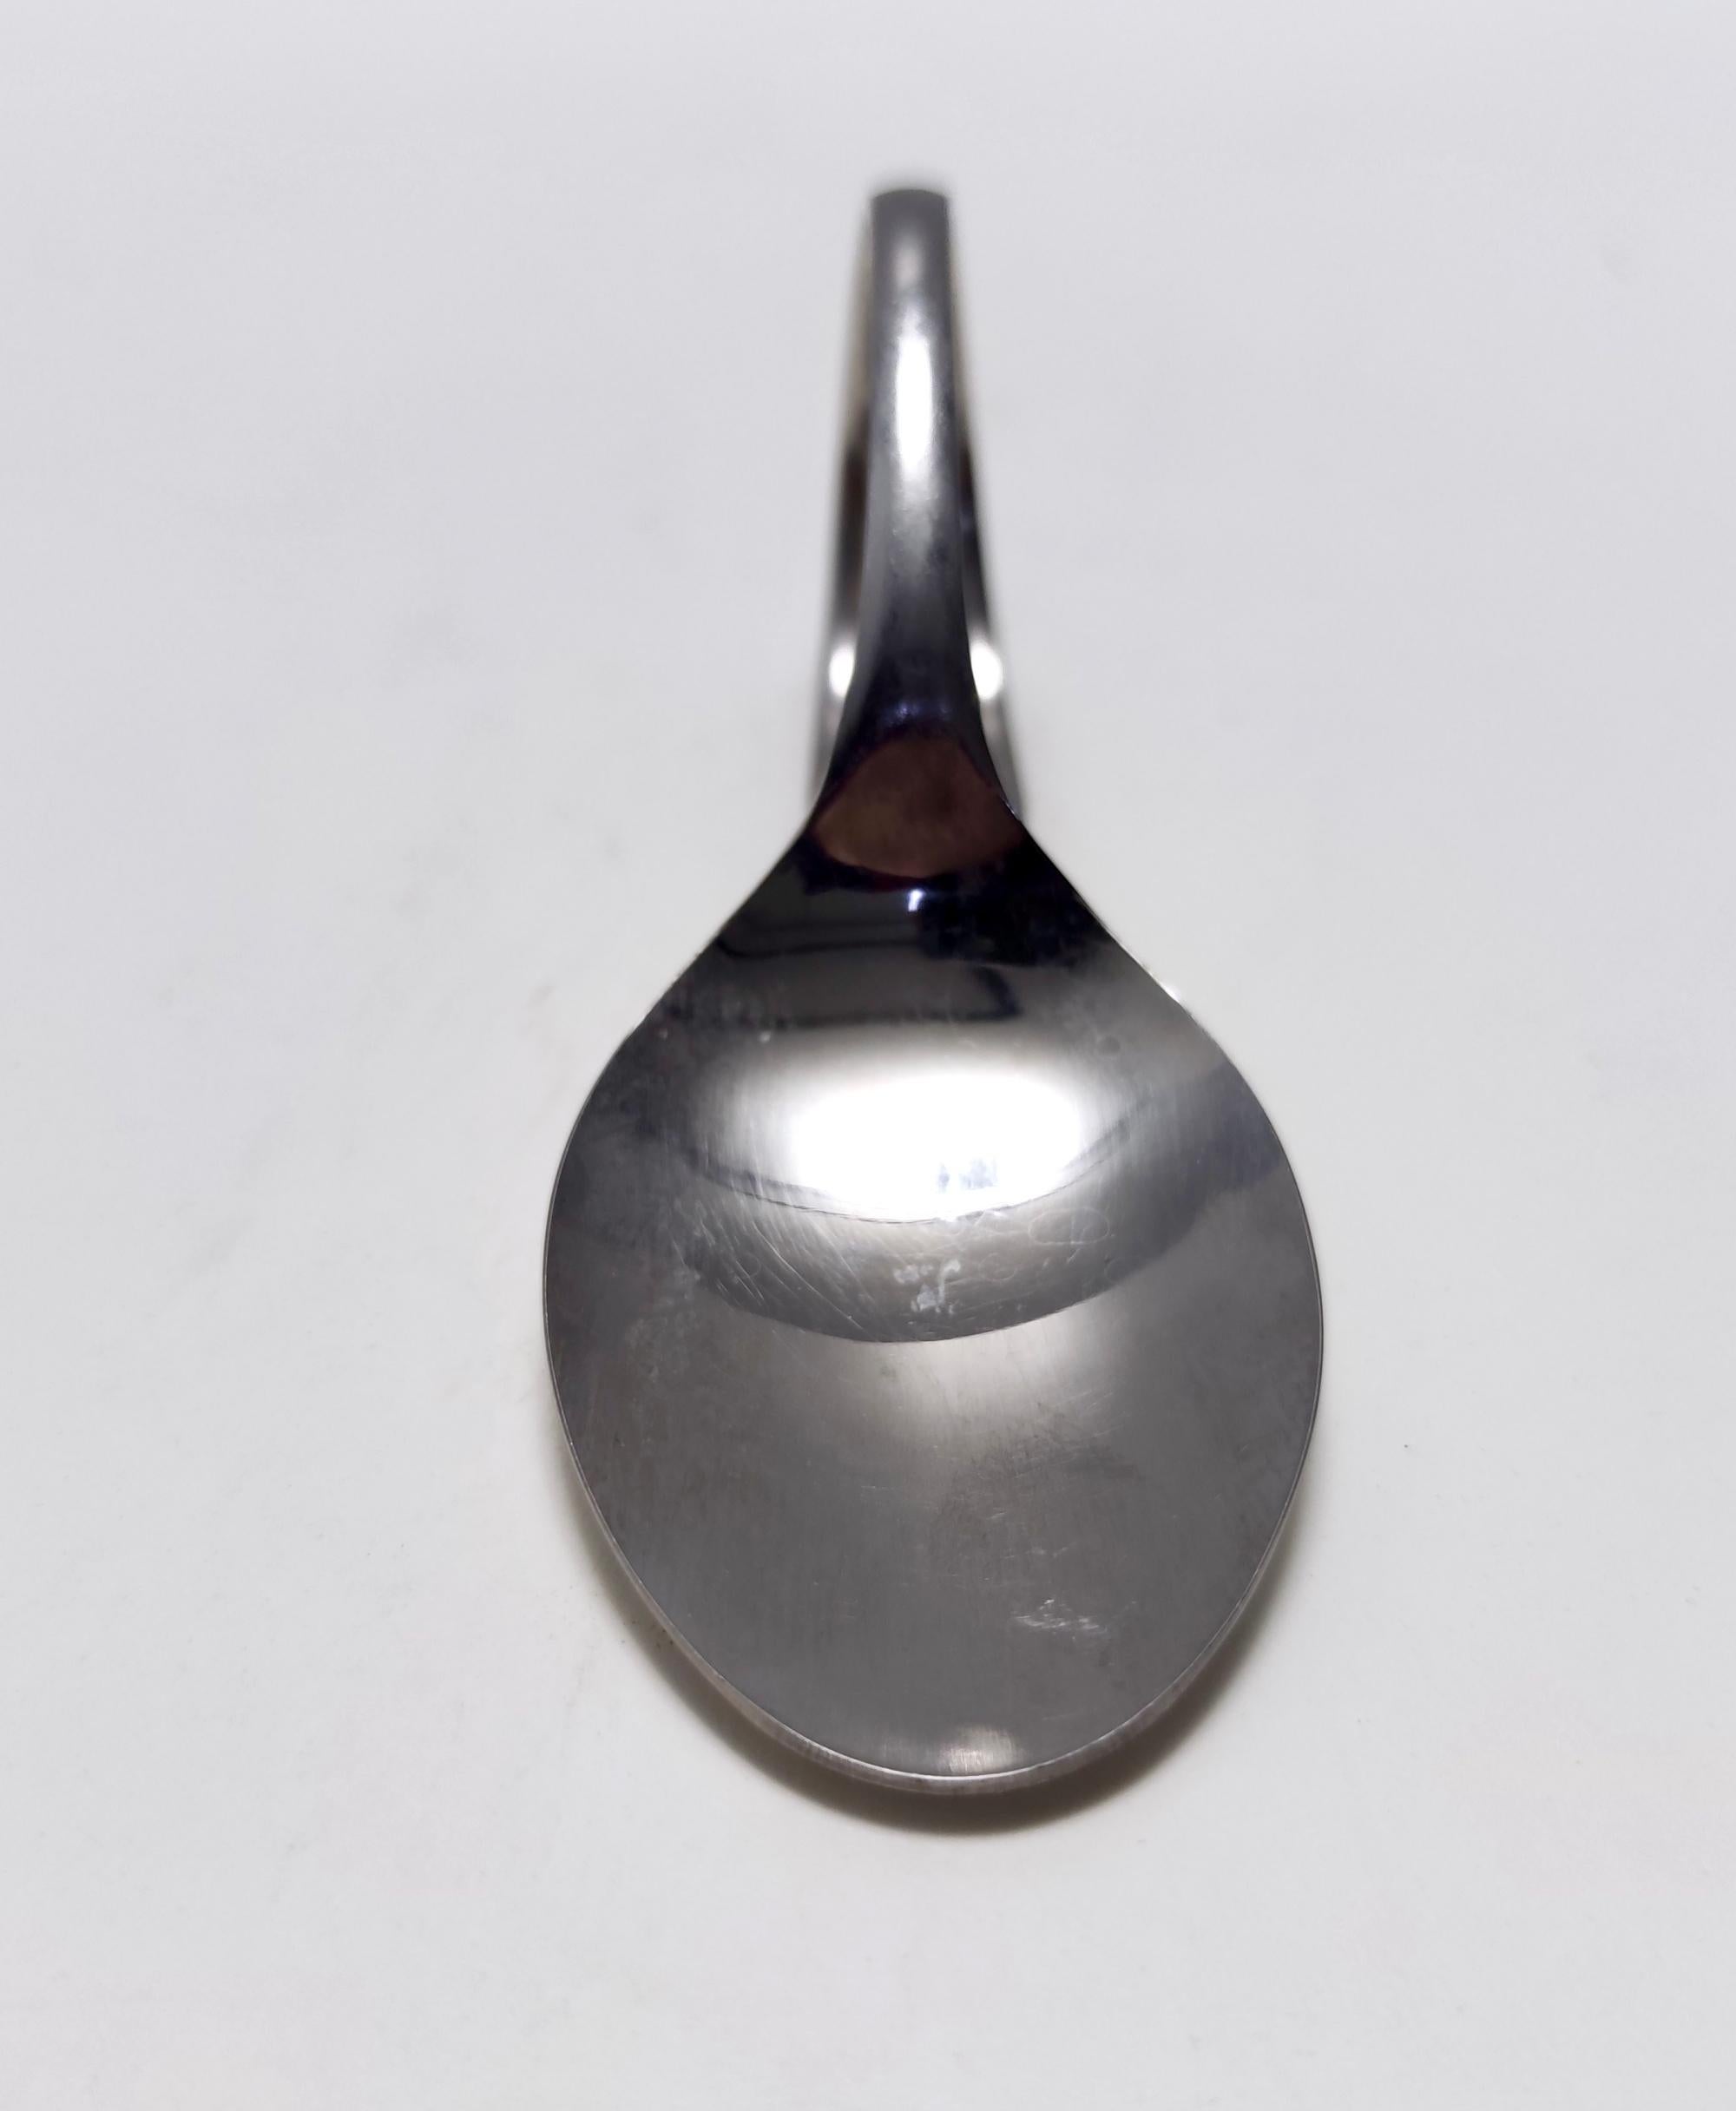 Postmodern Set of Twelve Steel Serving Spoon by Pinti, Italy, 1980s For Sale 3